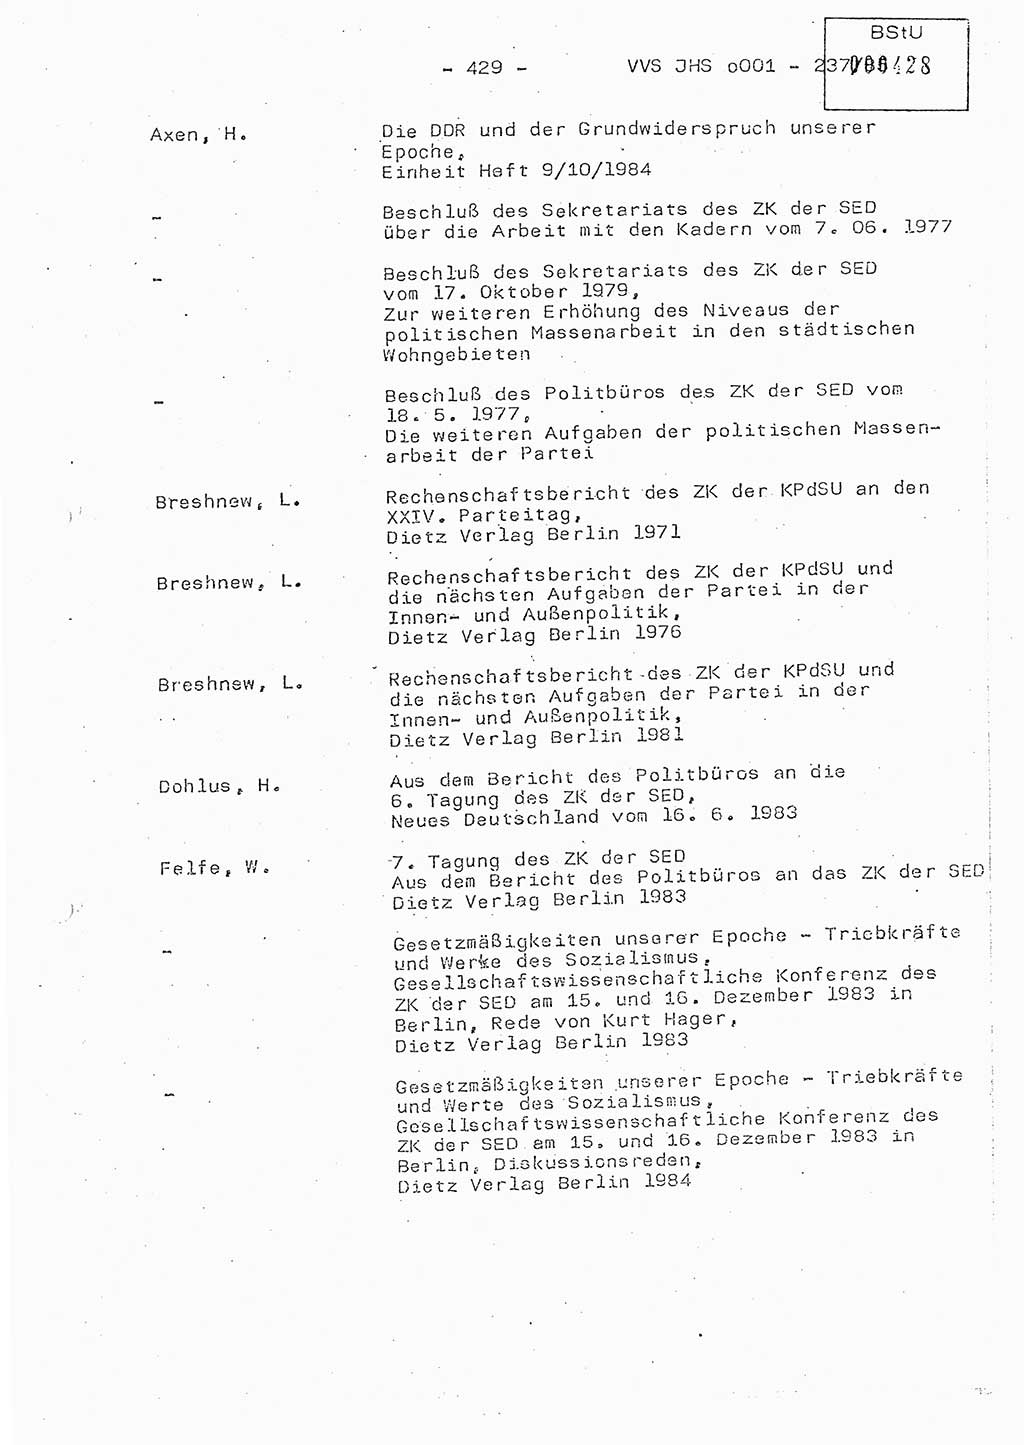 Dissertation Oberstleutnant Peter Jakulski (JHS), Oberstleutnat Christian Rudolph (HA Ⅸ), Major Horst Böttger (ZMD), Major Wolfgang Grüneberg (JHS), Major Albert Meutsch (JHS), Ministerium für Staatssicherheit (MfS) [Deutsche Demokratische Republik (DDR)], Juristische Hochschule (JHS), Vertrauliche Verschlußsache (VVS) o001-237/85, Potsdam 1985, Seite 429 (Diss. MfS DDR JHS VVS o001-237/85 1985, S. 429)